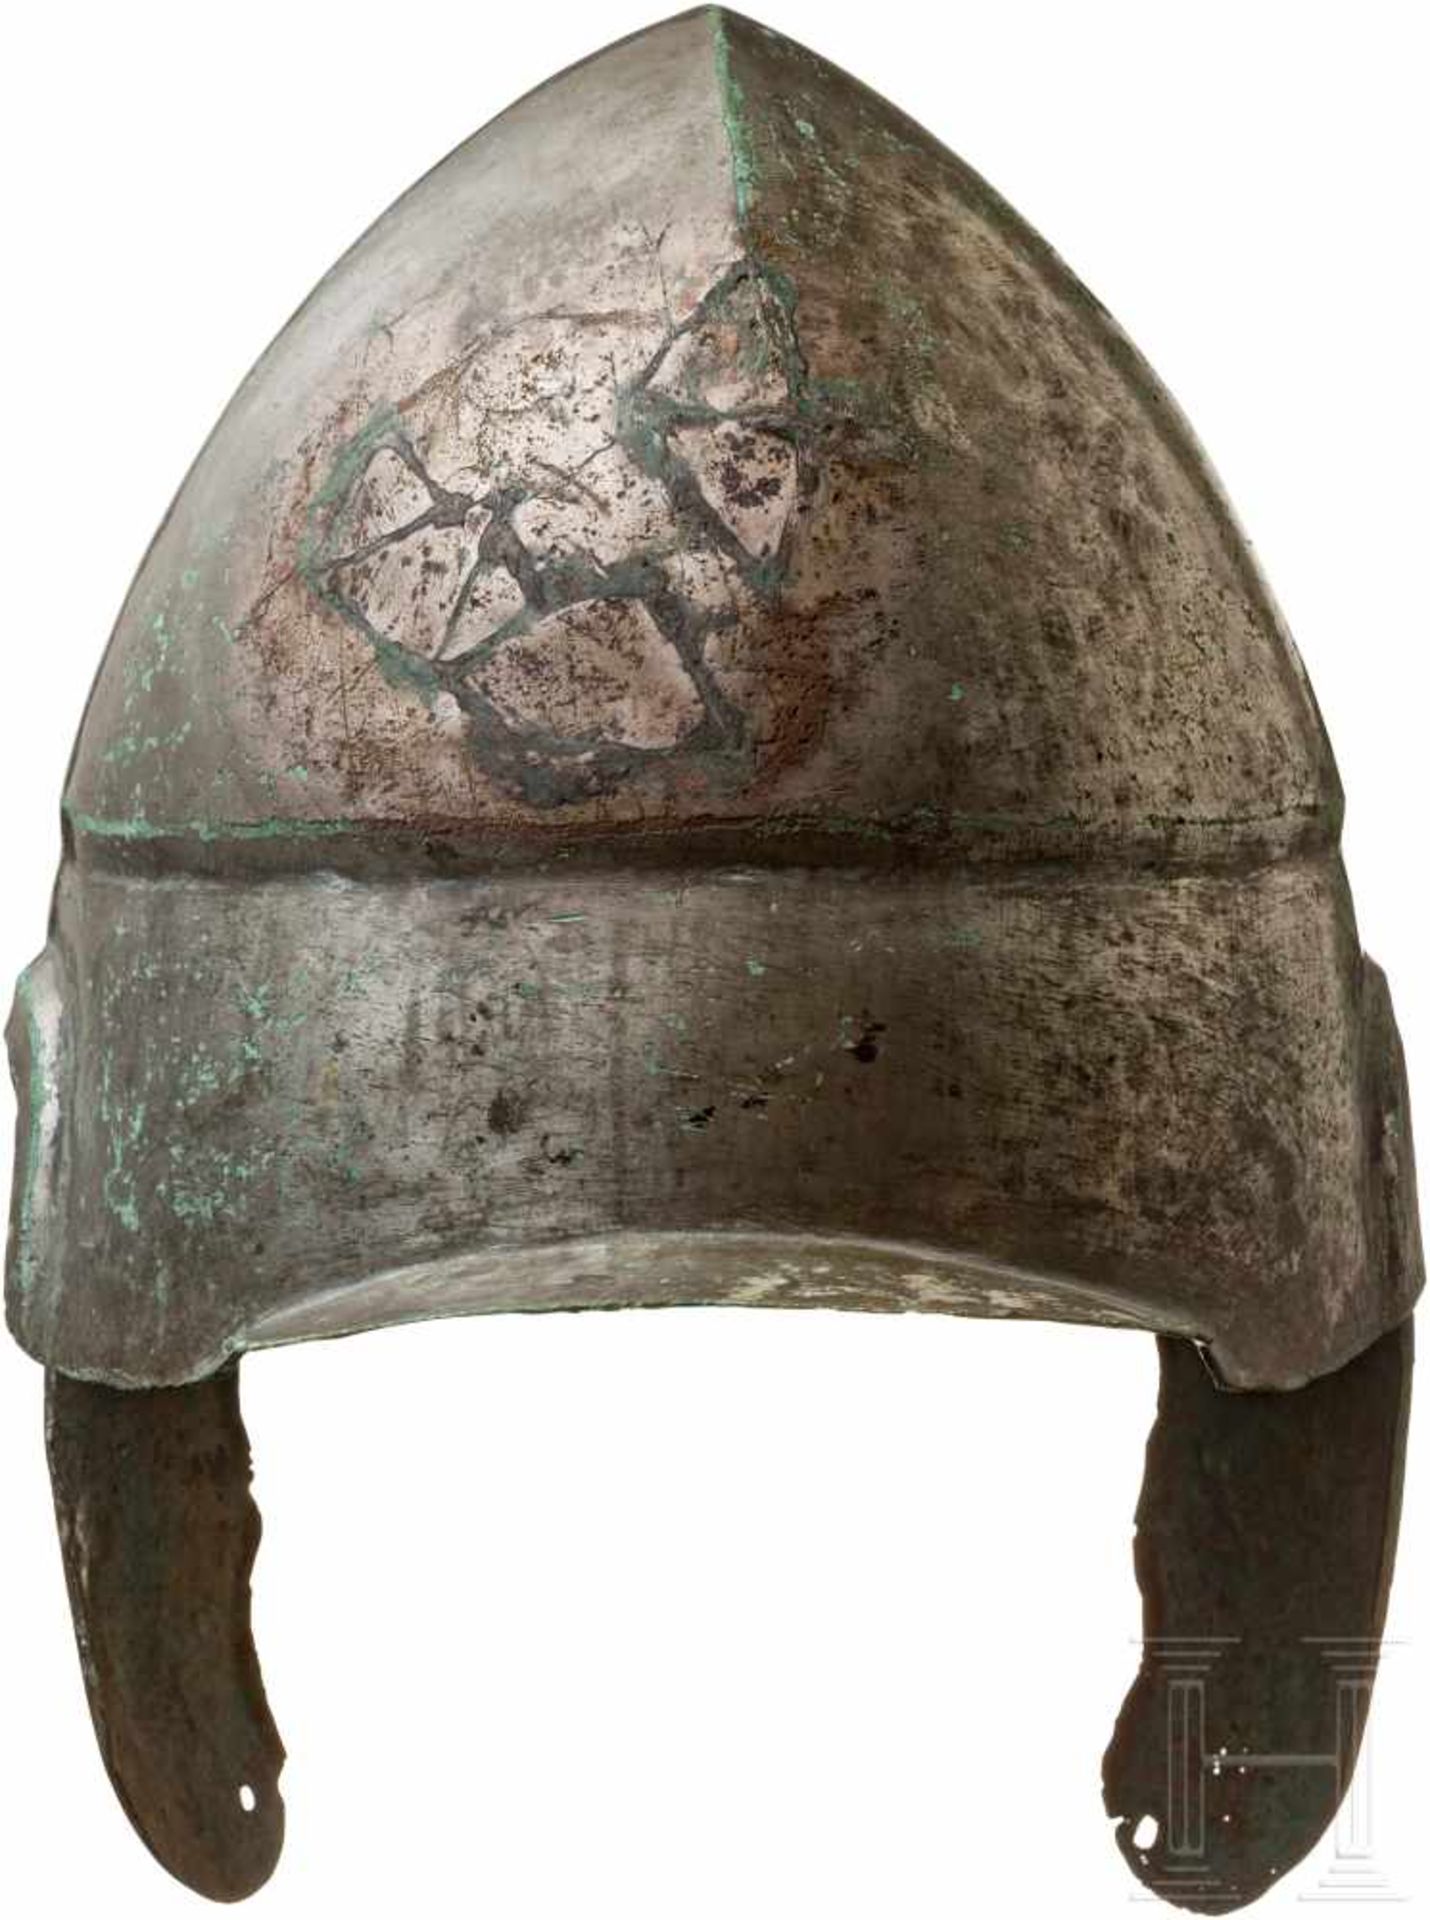 Chalkidischer Helm, Typ V, frühes 4. Jhdt. v. Chr.Breiter Bronzehelm mit vollflächiger Verzinnung, - Bild 4 aus 6